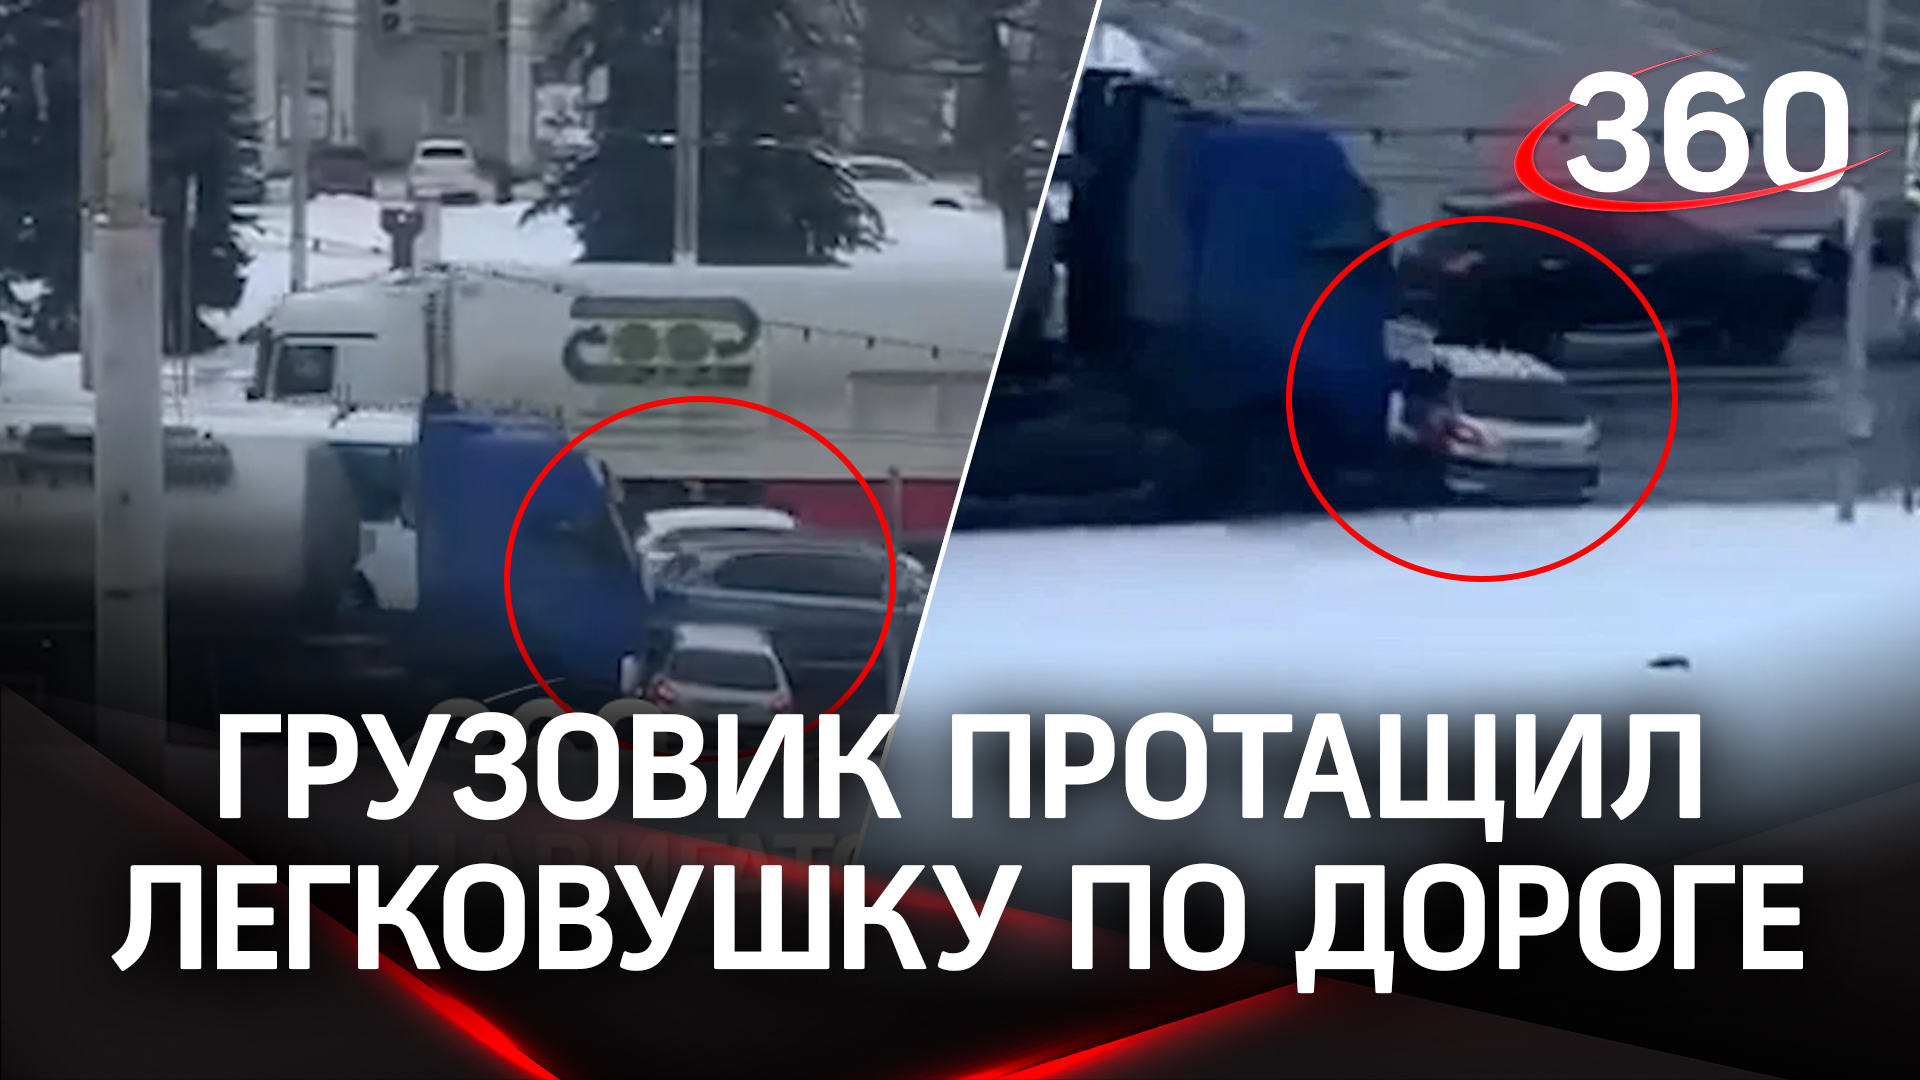 Маршрут перестроен: водитель грузовика не заметил легковушку и возил ее с собой по улицам Костромы